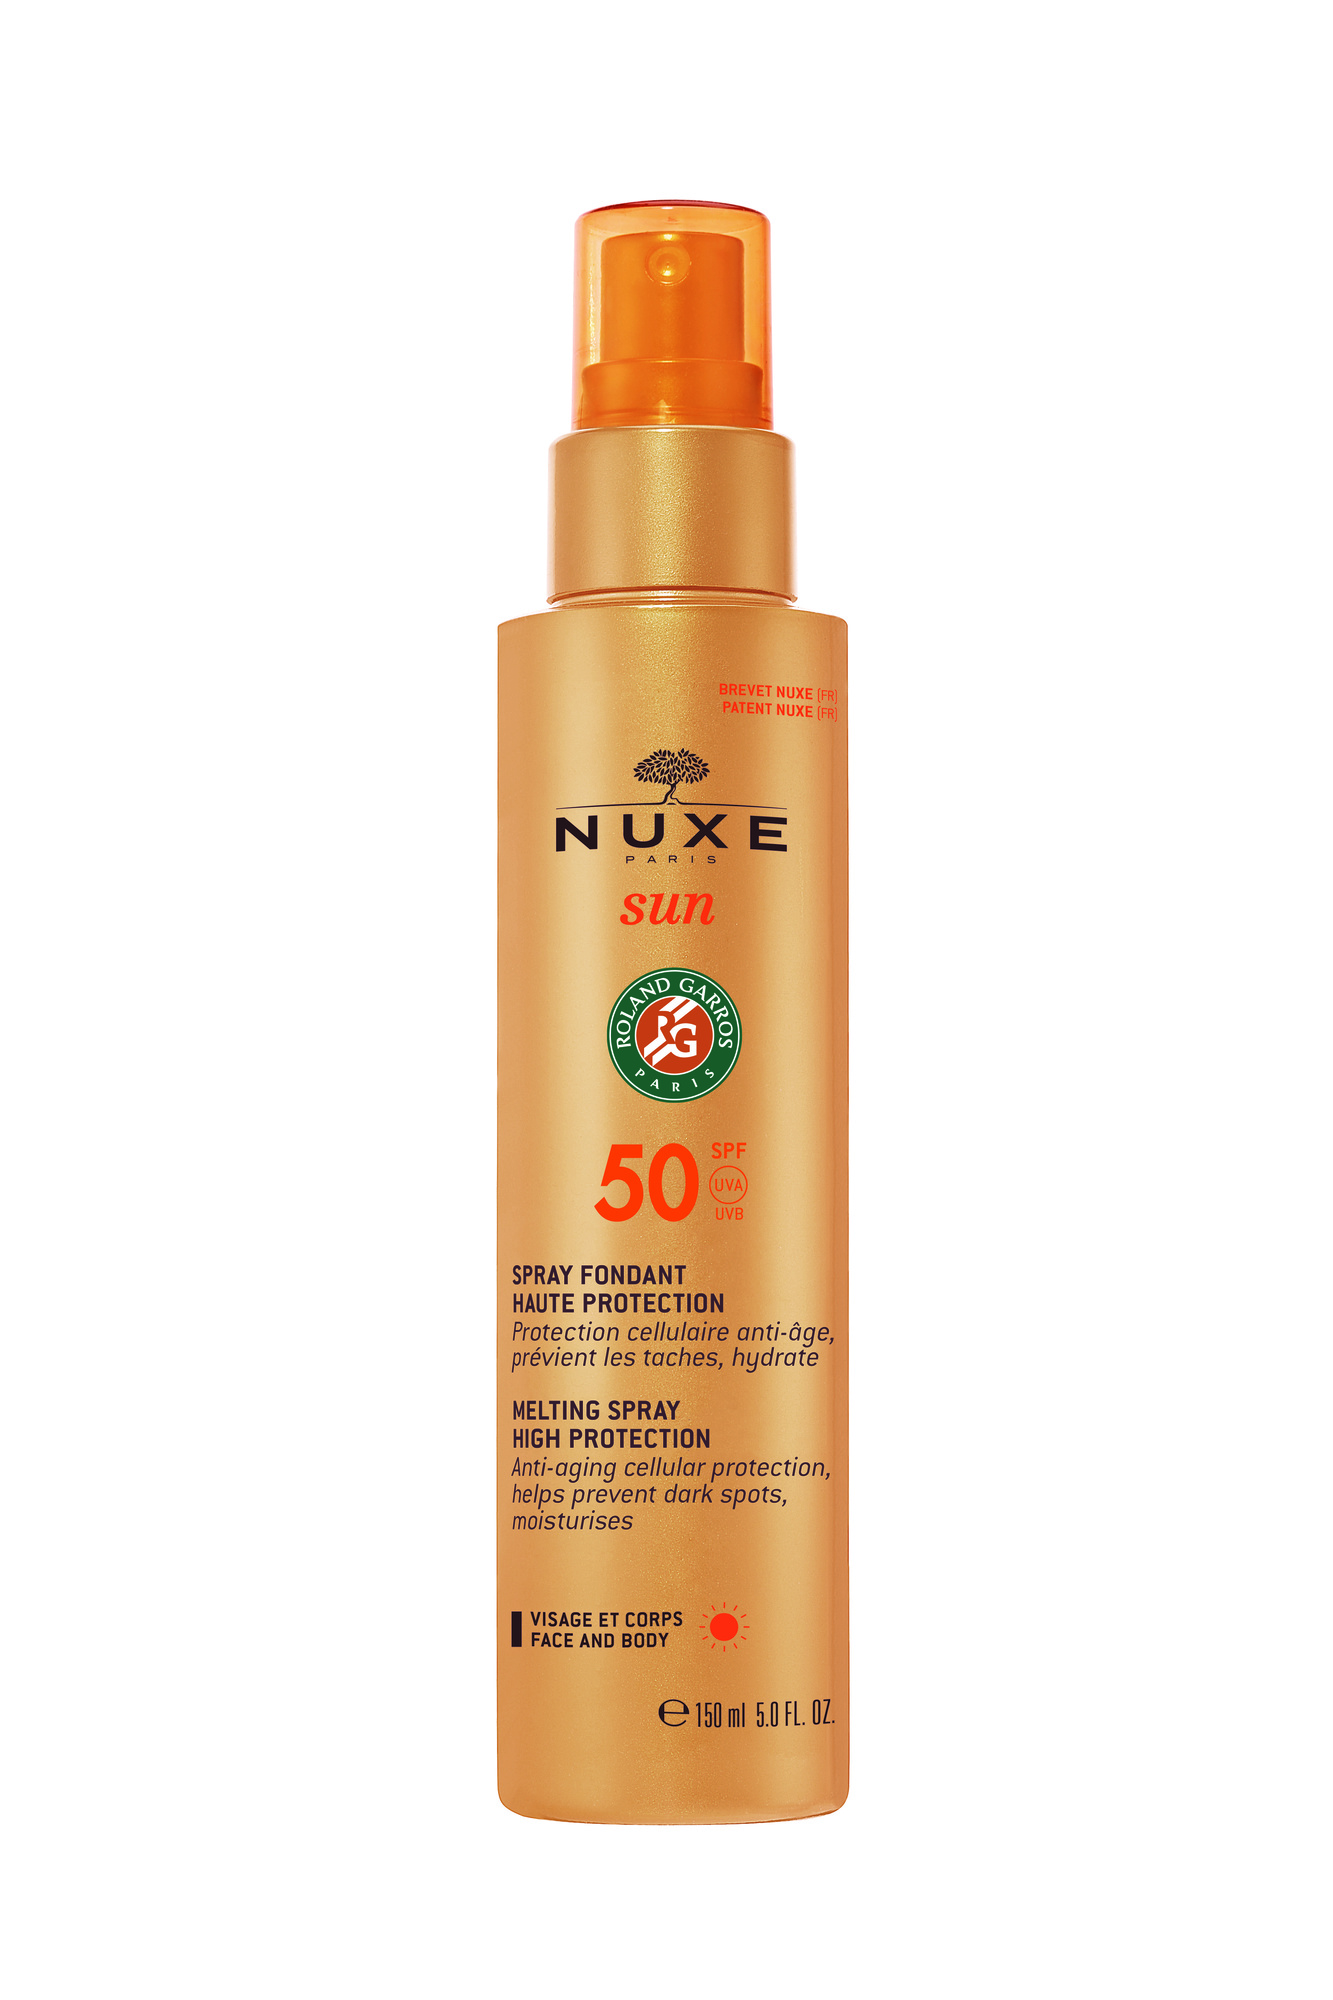 Nuxe Sun Melting Spray SPF50, 150ml.